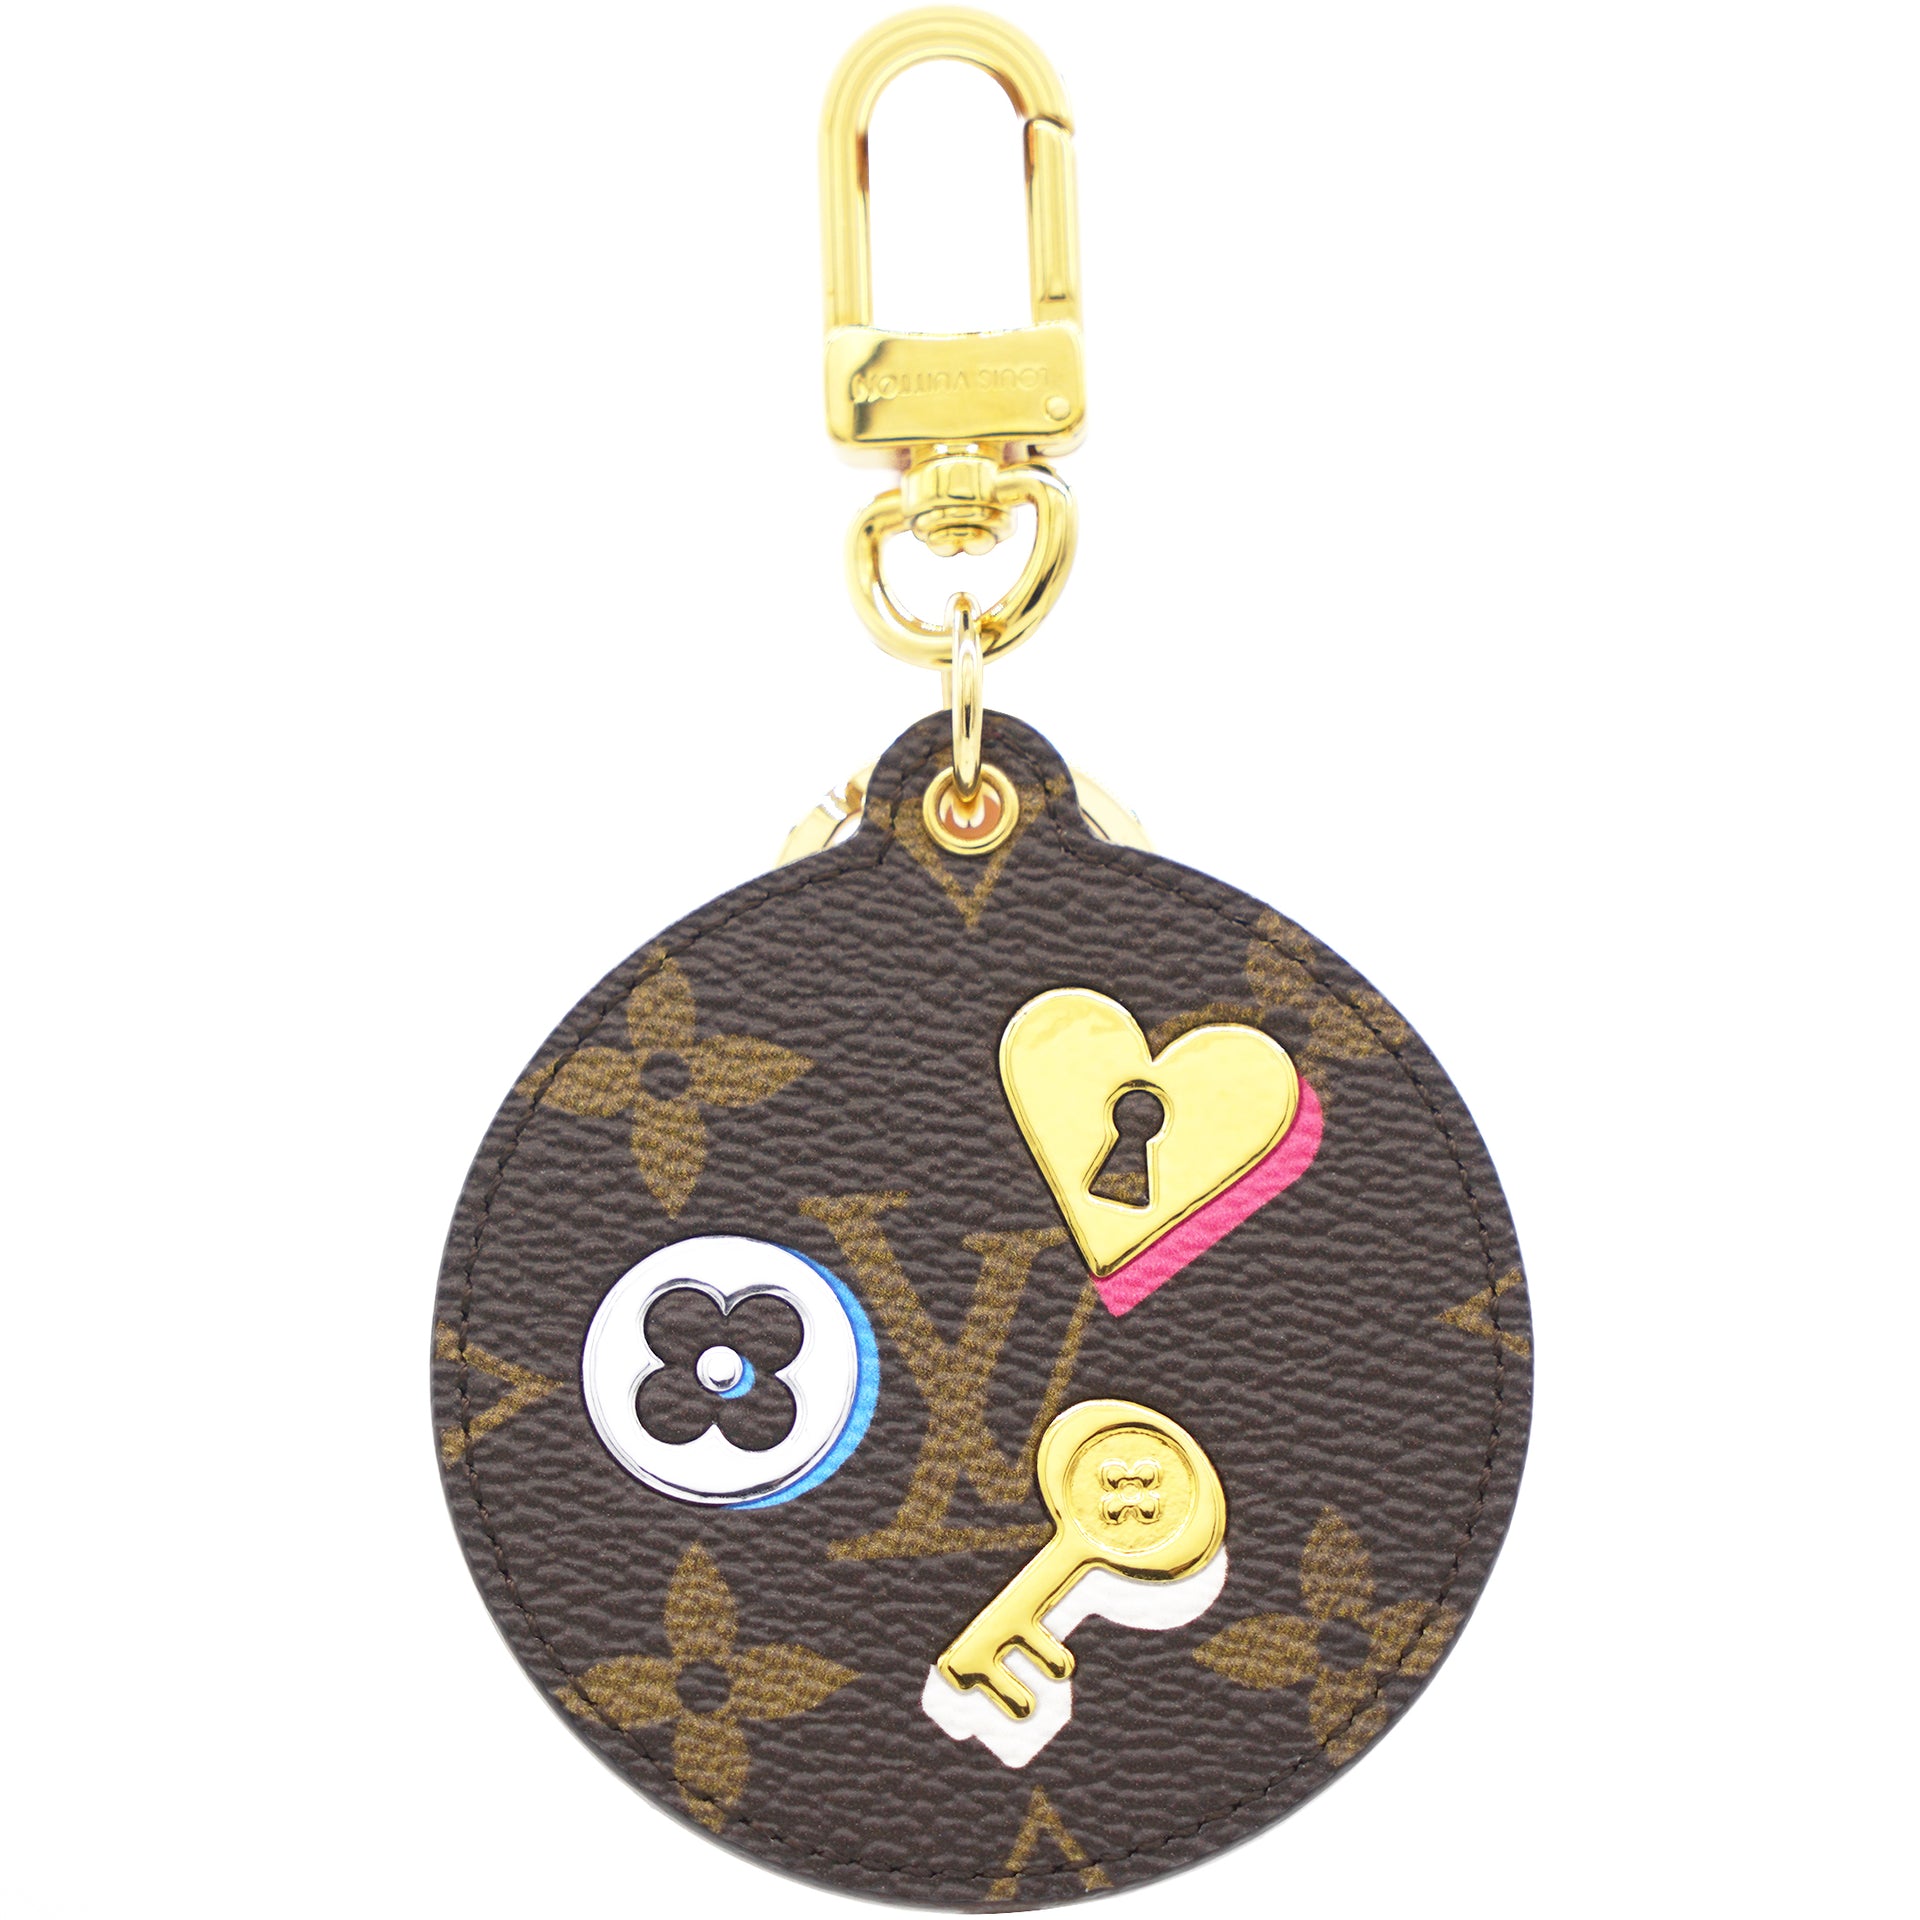 Louis Vuitton, Accessories, Louis Vuitton Monogram Keychain Strap